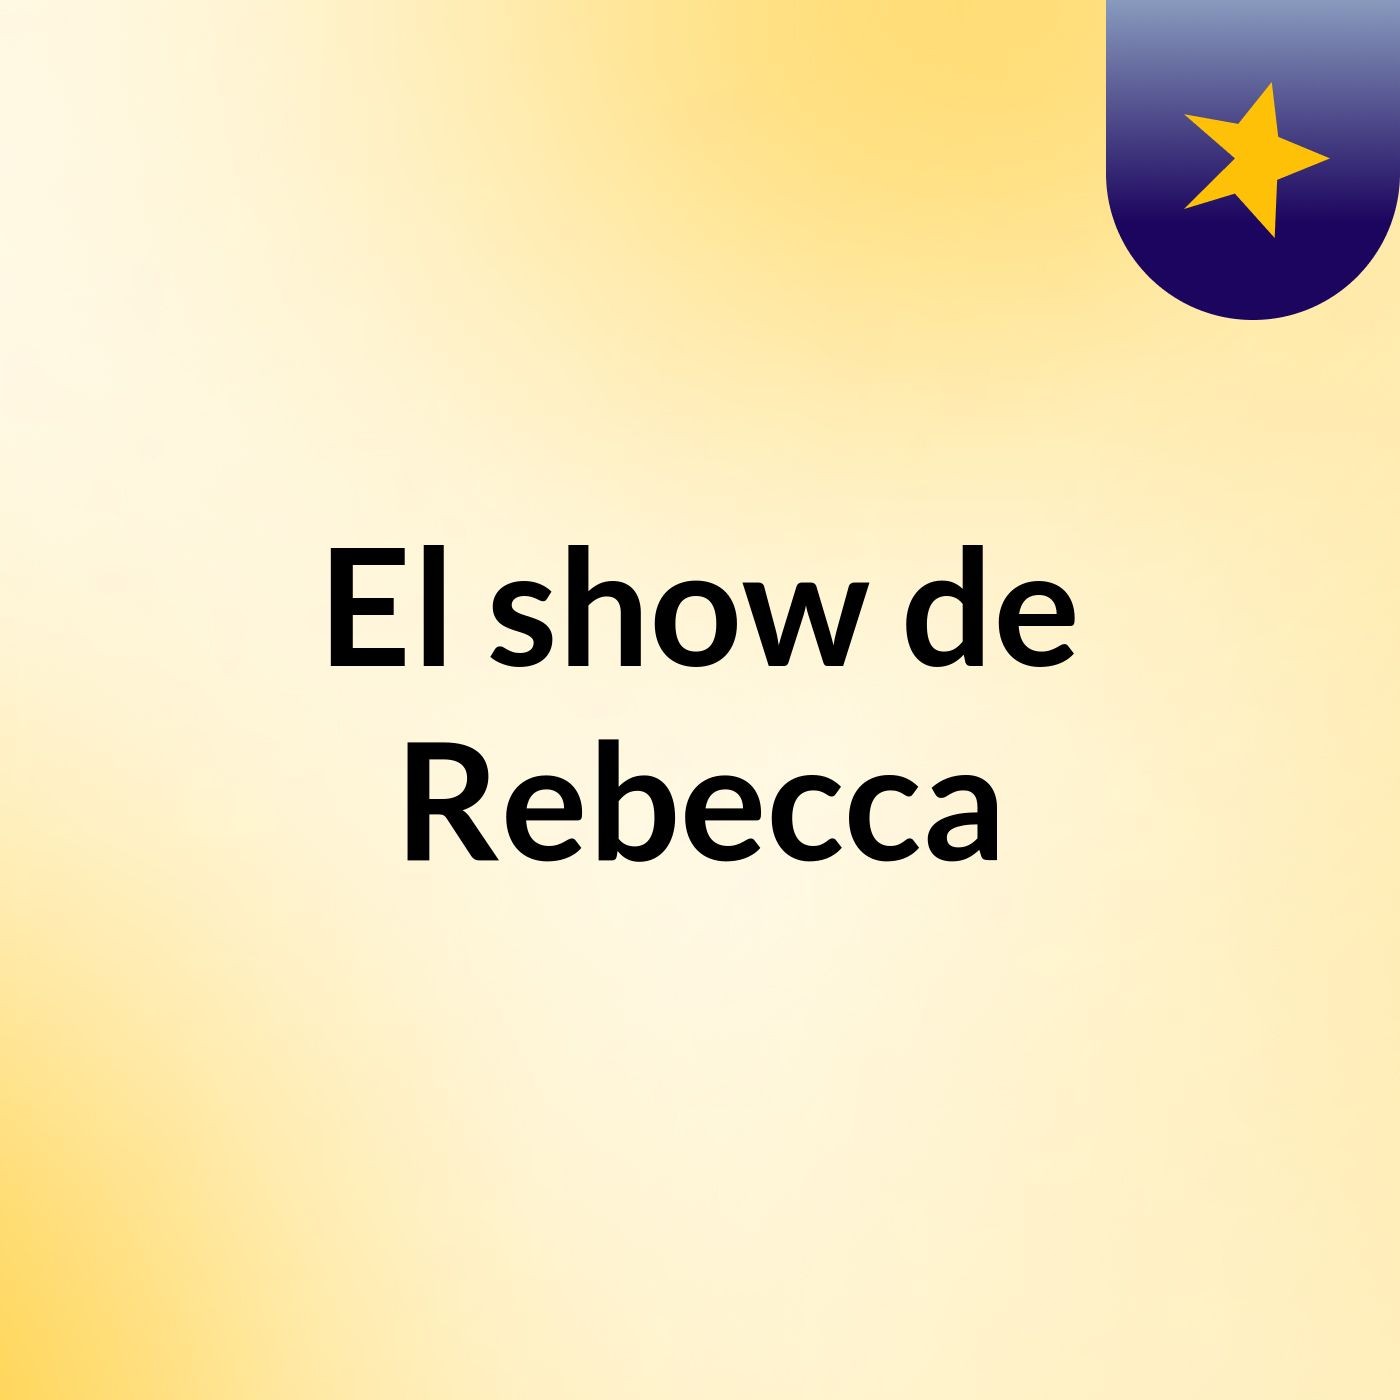 El show de Rebecca